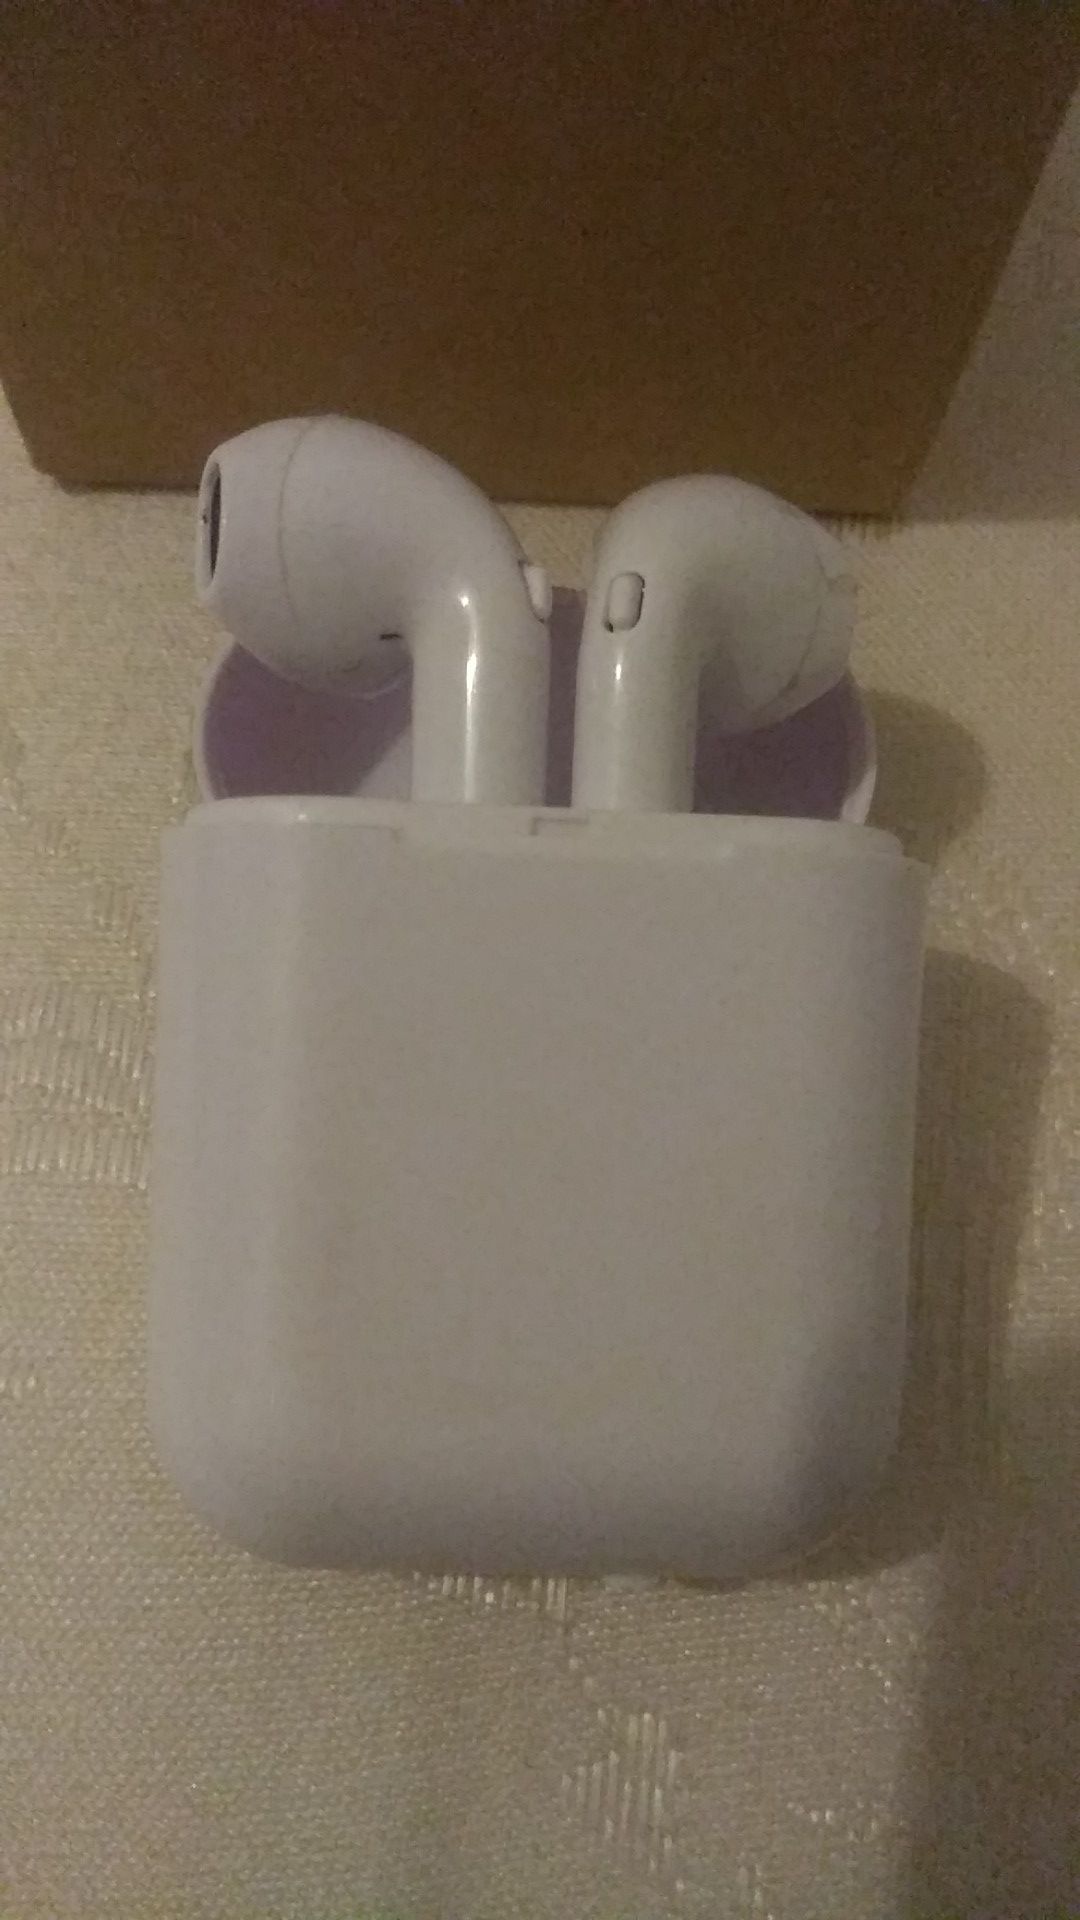 Wireless earpods